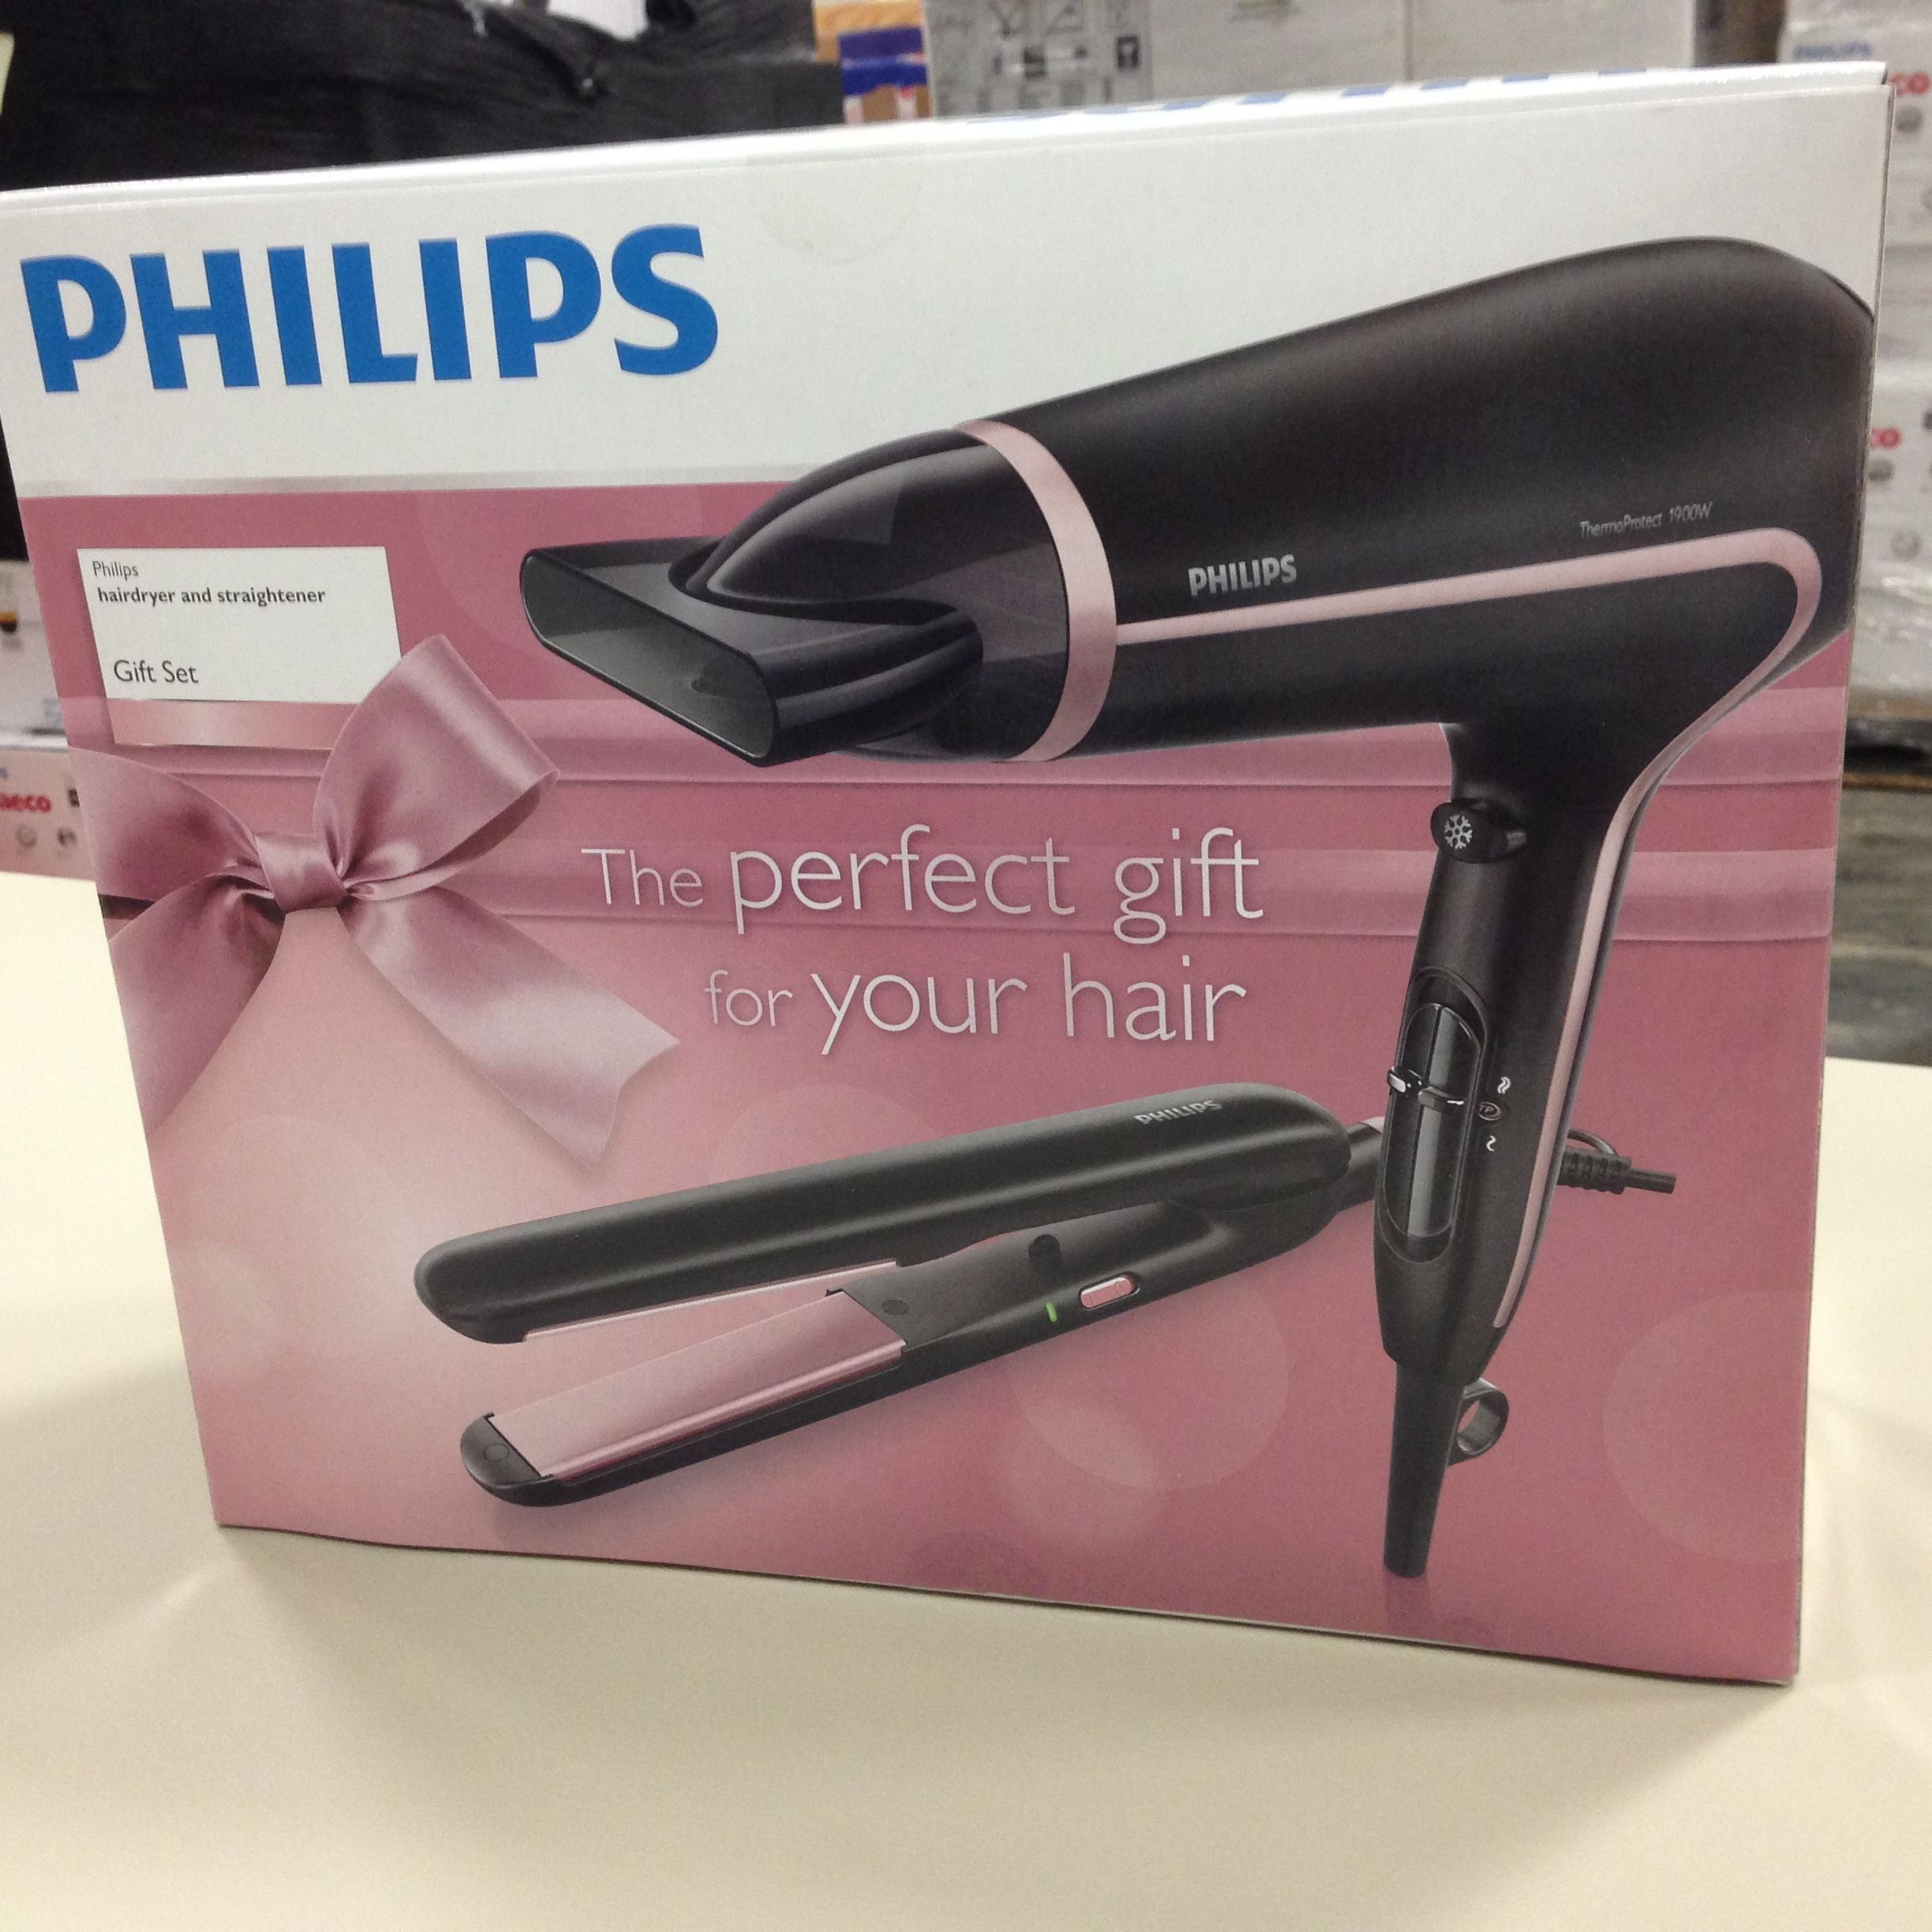 Granskning av de bästa Philips hårtorkarna